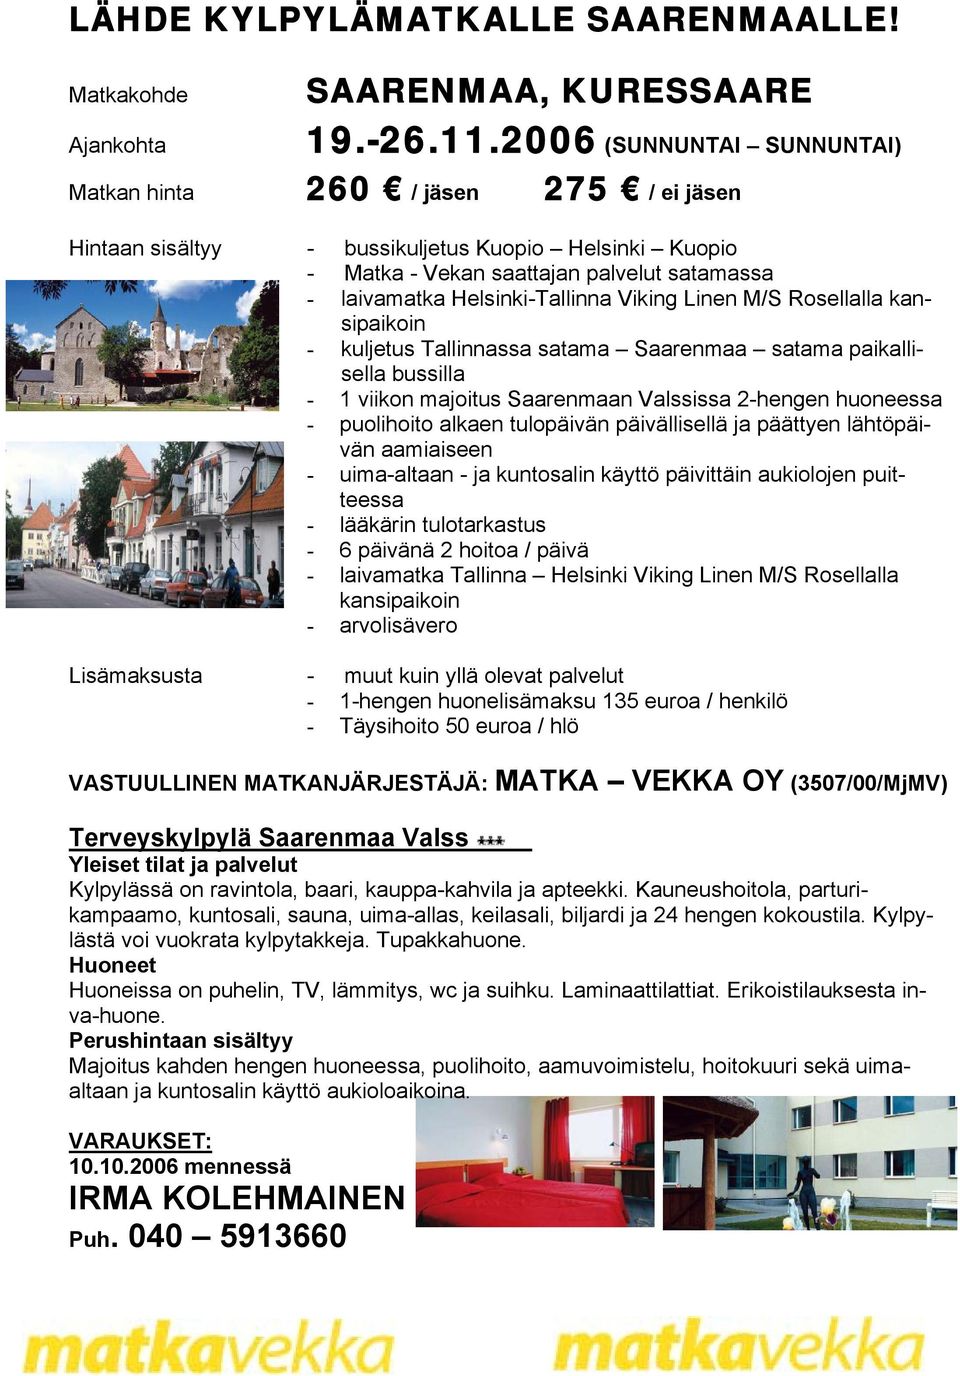 Viking Linen M/S Rosellalla kansipaikoin - kuljetus Tallinnassa satama Saarenmaa satama paikallisella bussilla - 1 viikon majoitus Saarenmaan Valssissa 2-hengen huoneessa - puolihoito alkaen